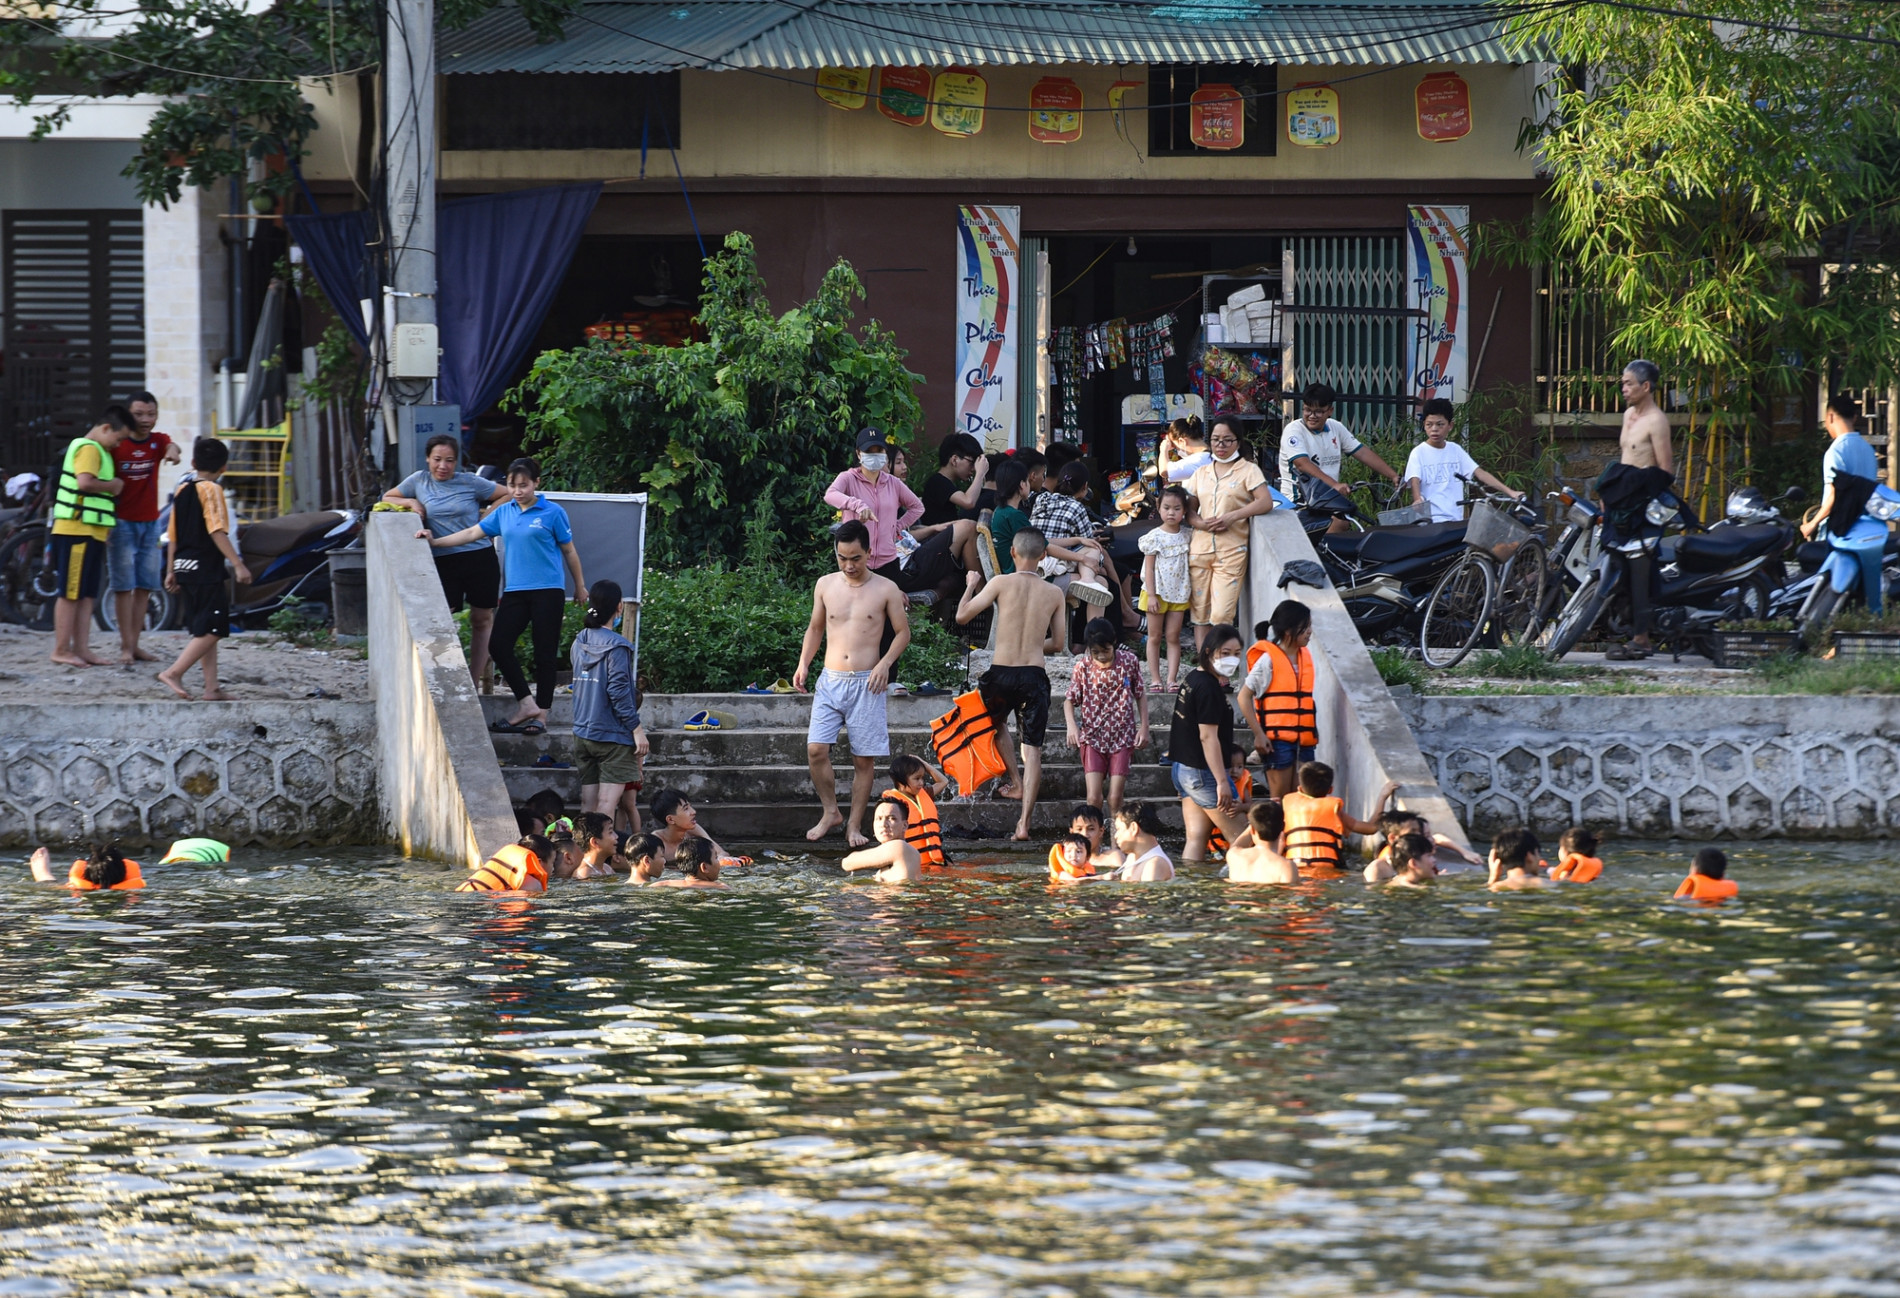 Hà Nội: Người dân bỏ tiền cải tạo ao làng ô nhiễm thành bể bơi miễn phí, cả xã rủ nhau đi tắm giải nhiệt - Ảnh 3.